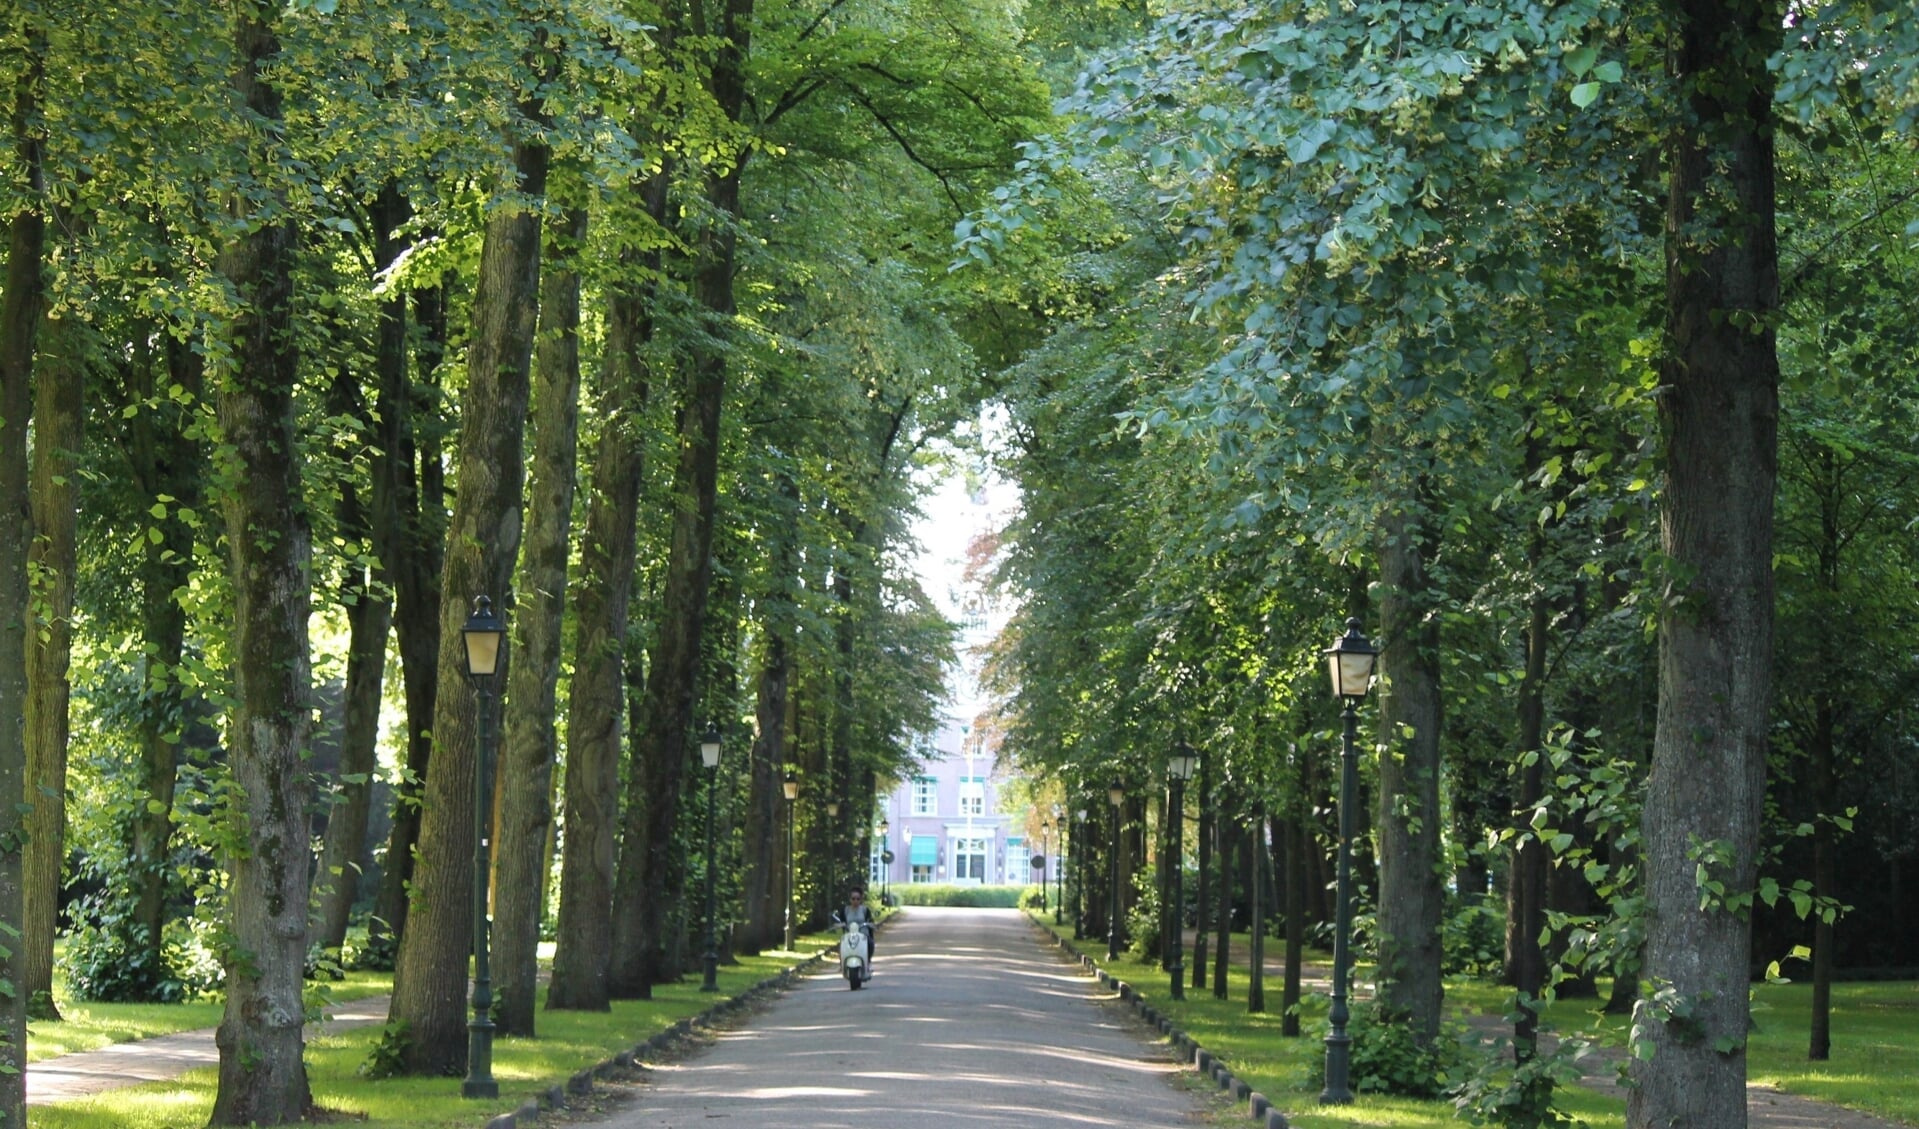 De Bisschopslaan met de hoge bomen aan weerszijde is een van bekendste straten in Warmond.